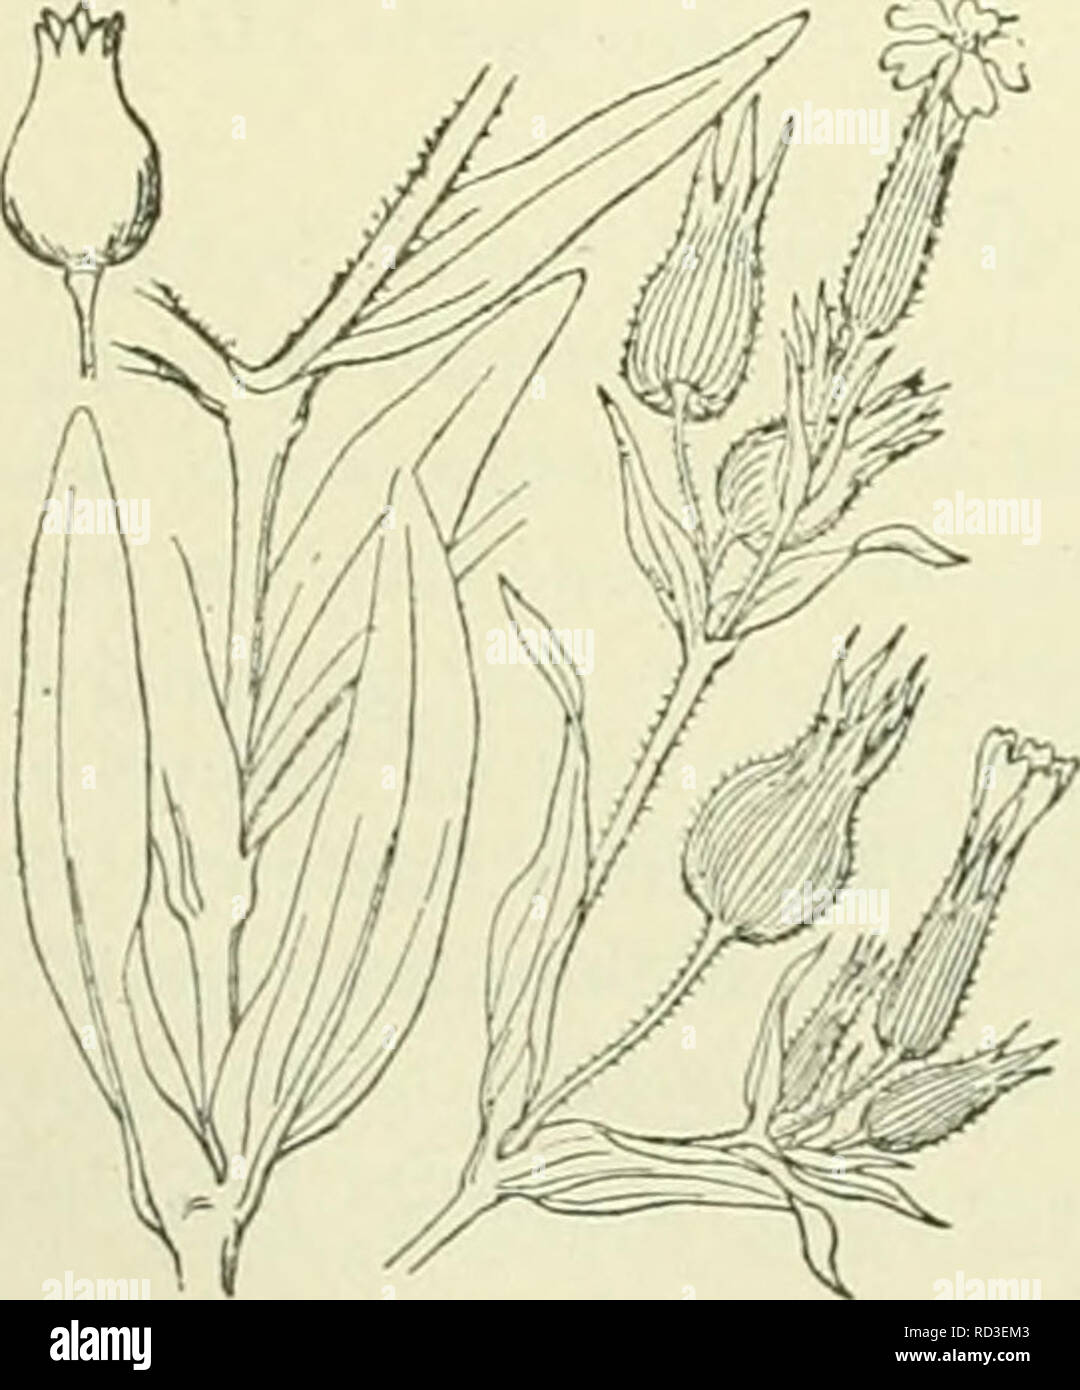 . De flora van Nederland. Plants. |S. Bloemen in armbloemige schijntrossen. Stengel naar boven klierachtig. Onderste bladen langwerpig-spatelvormig, de hoogere lancetvormig. Vrucht- kelk eirond. Kelktanden lancet-priemvormig . . S. gallica blz. 167. S. vulgaris') Grcke. (S. venósa-) Aschers., S. inflata 3) Sm.) (fig. 192). Gewone silene. Uit den gebogen, vertakten wortelstoi&lt; komt een rechtopstaande, rolronde, blauwgroene, onbehaarde of iets behaarde stengel, die soms vertakt is. De bladen zijn lancetvormig of eirond, spits, gaafrandig, de onderste zijn aan den voet versmald. De bloemen zij Stock Photo